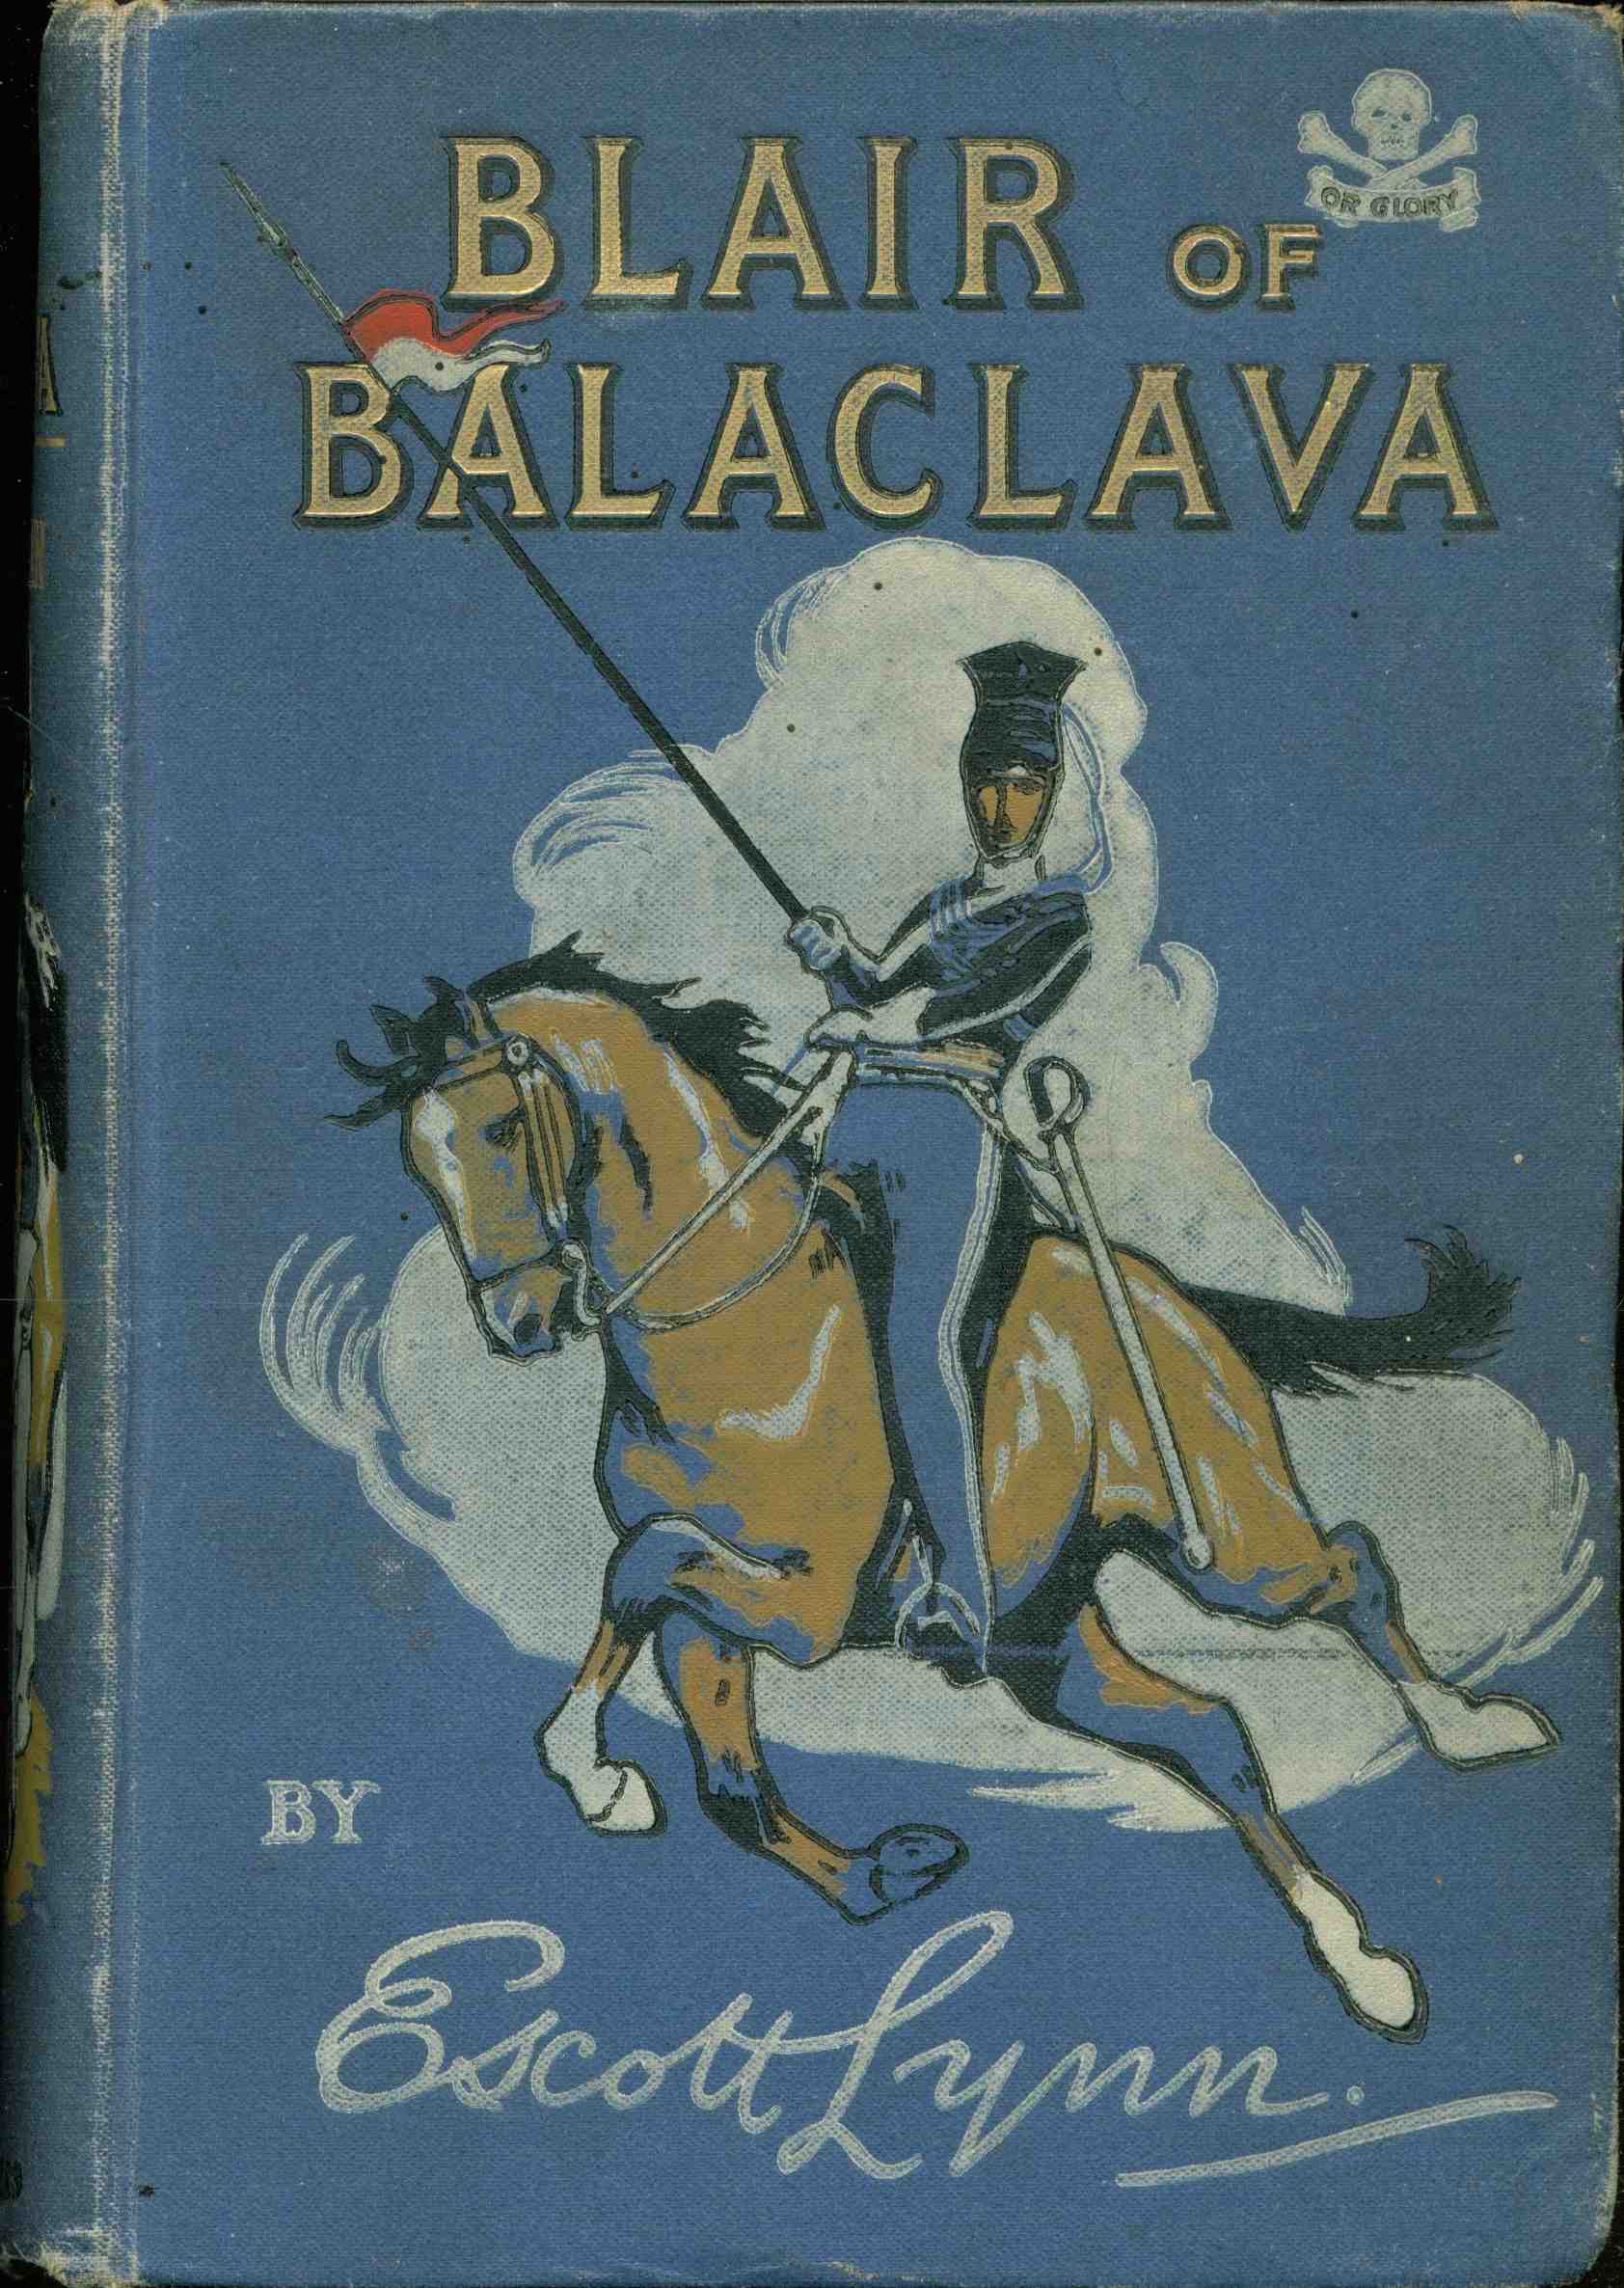 Blair of Balaclava